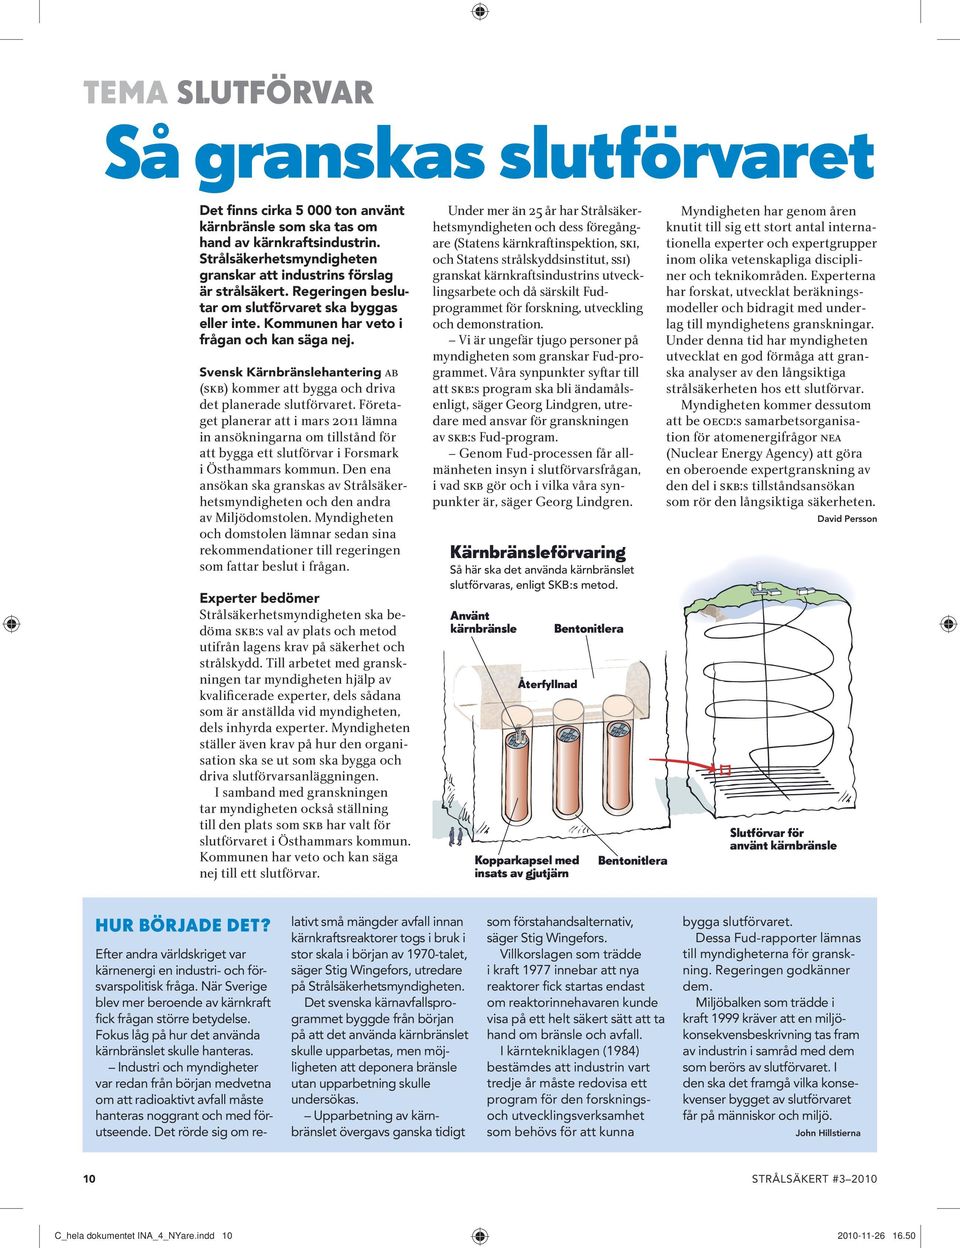 Regeringen beslutar om slutförvaret ska byggas eller inte. kommunen har veto i frågan och kan säga nej. Svensk kärnbränslehantering AB (SKB) kommer att bygga och driva det planerade slutförvaret.